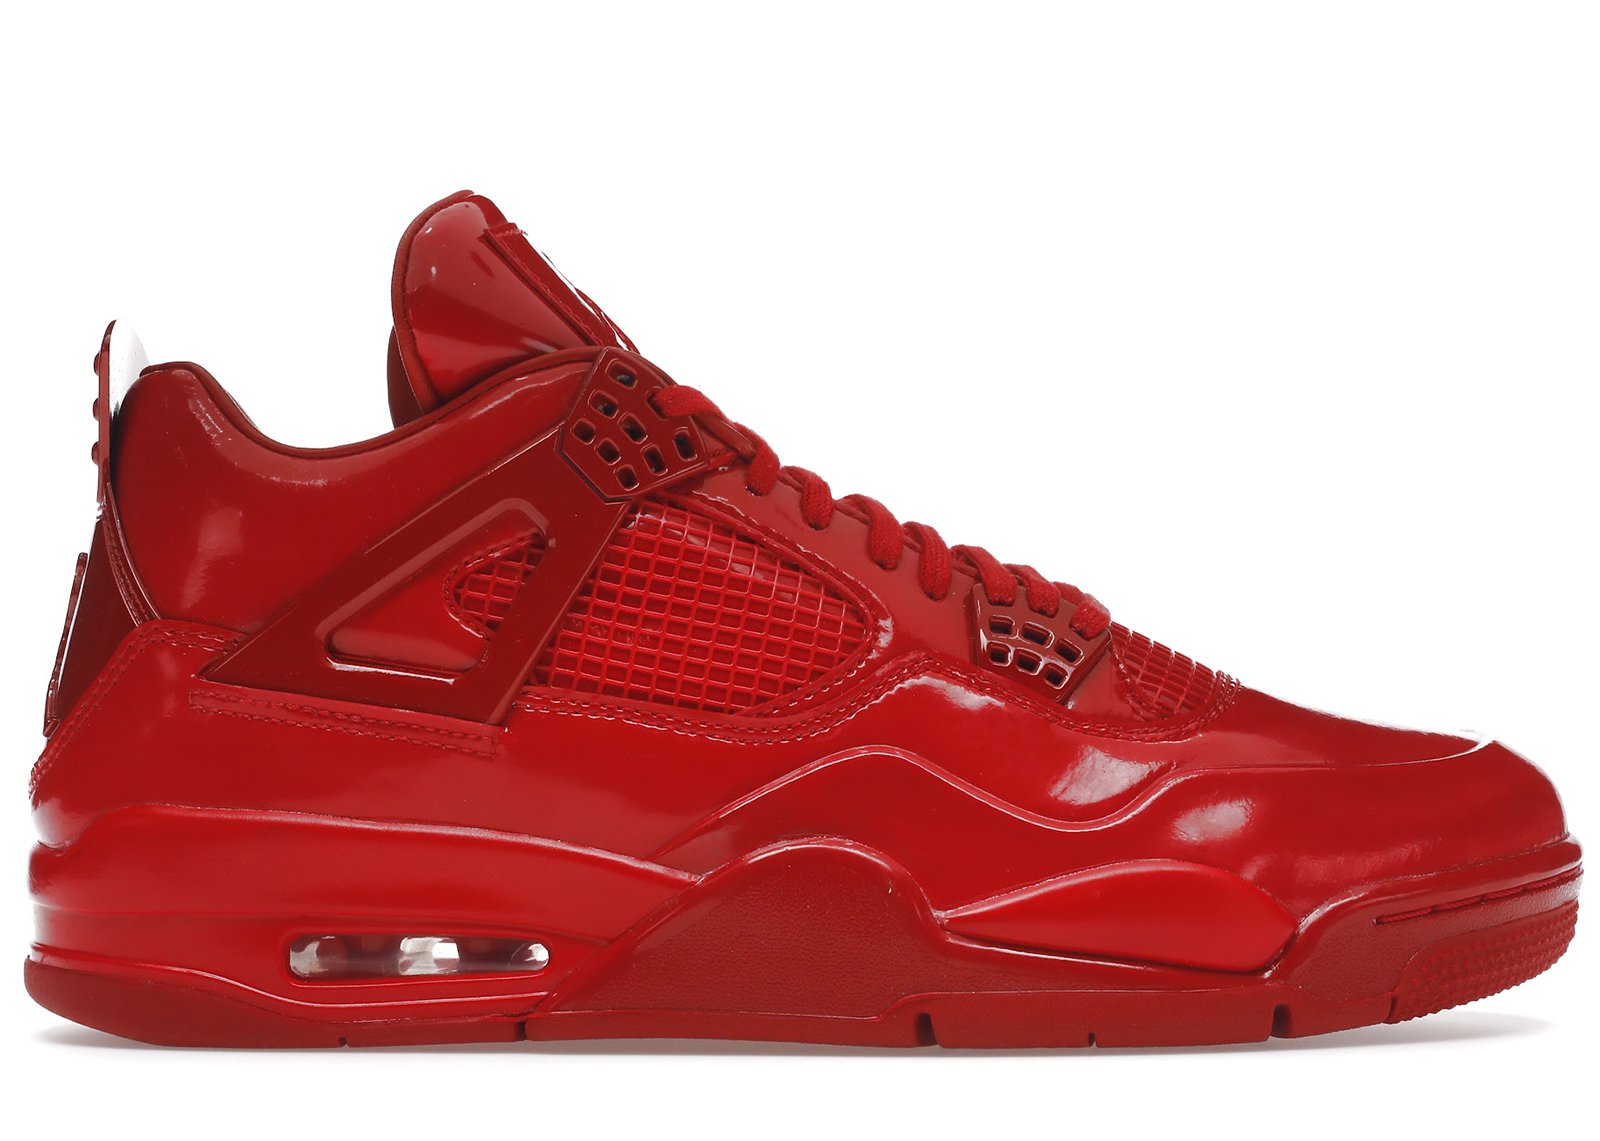 Jordan 4 Retro 11Lab4 Red sneakers